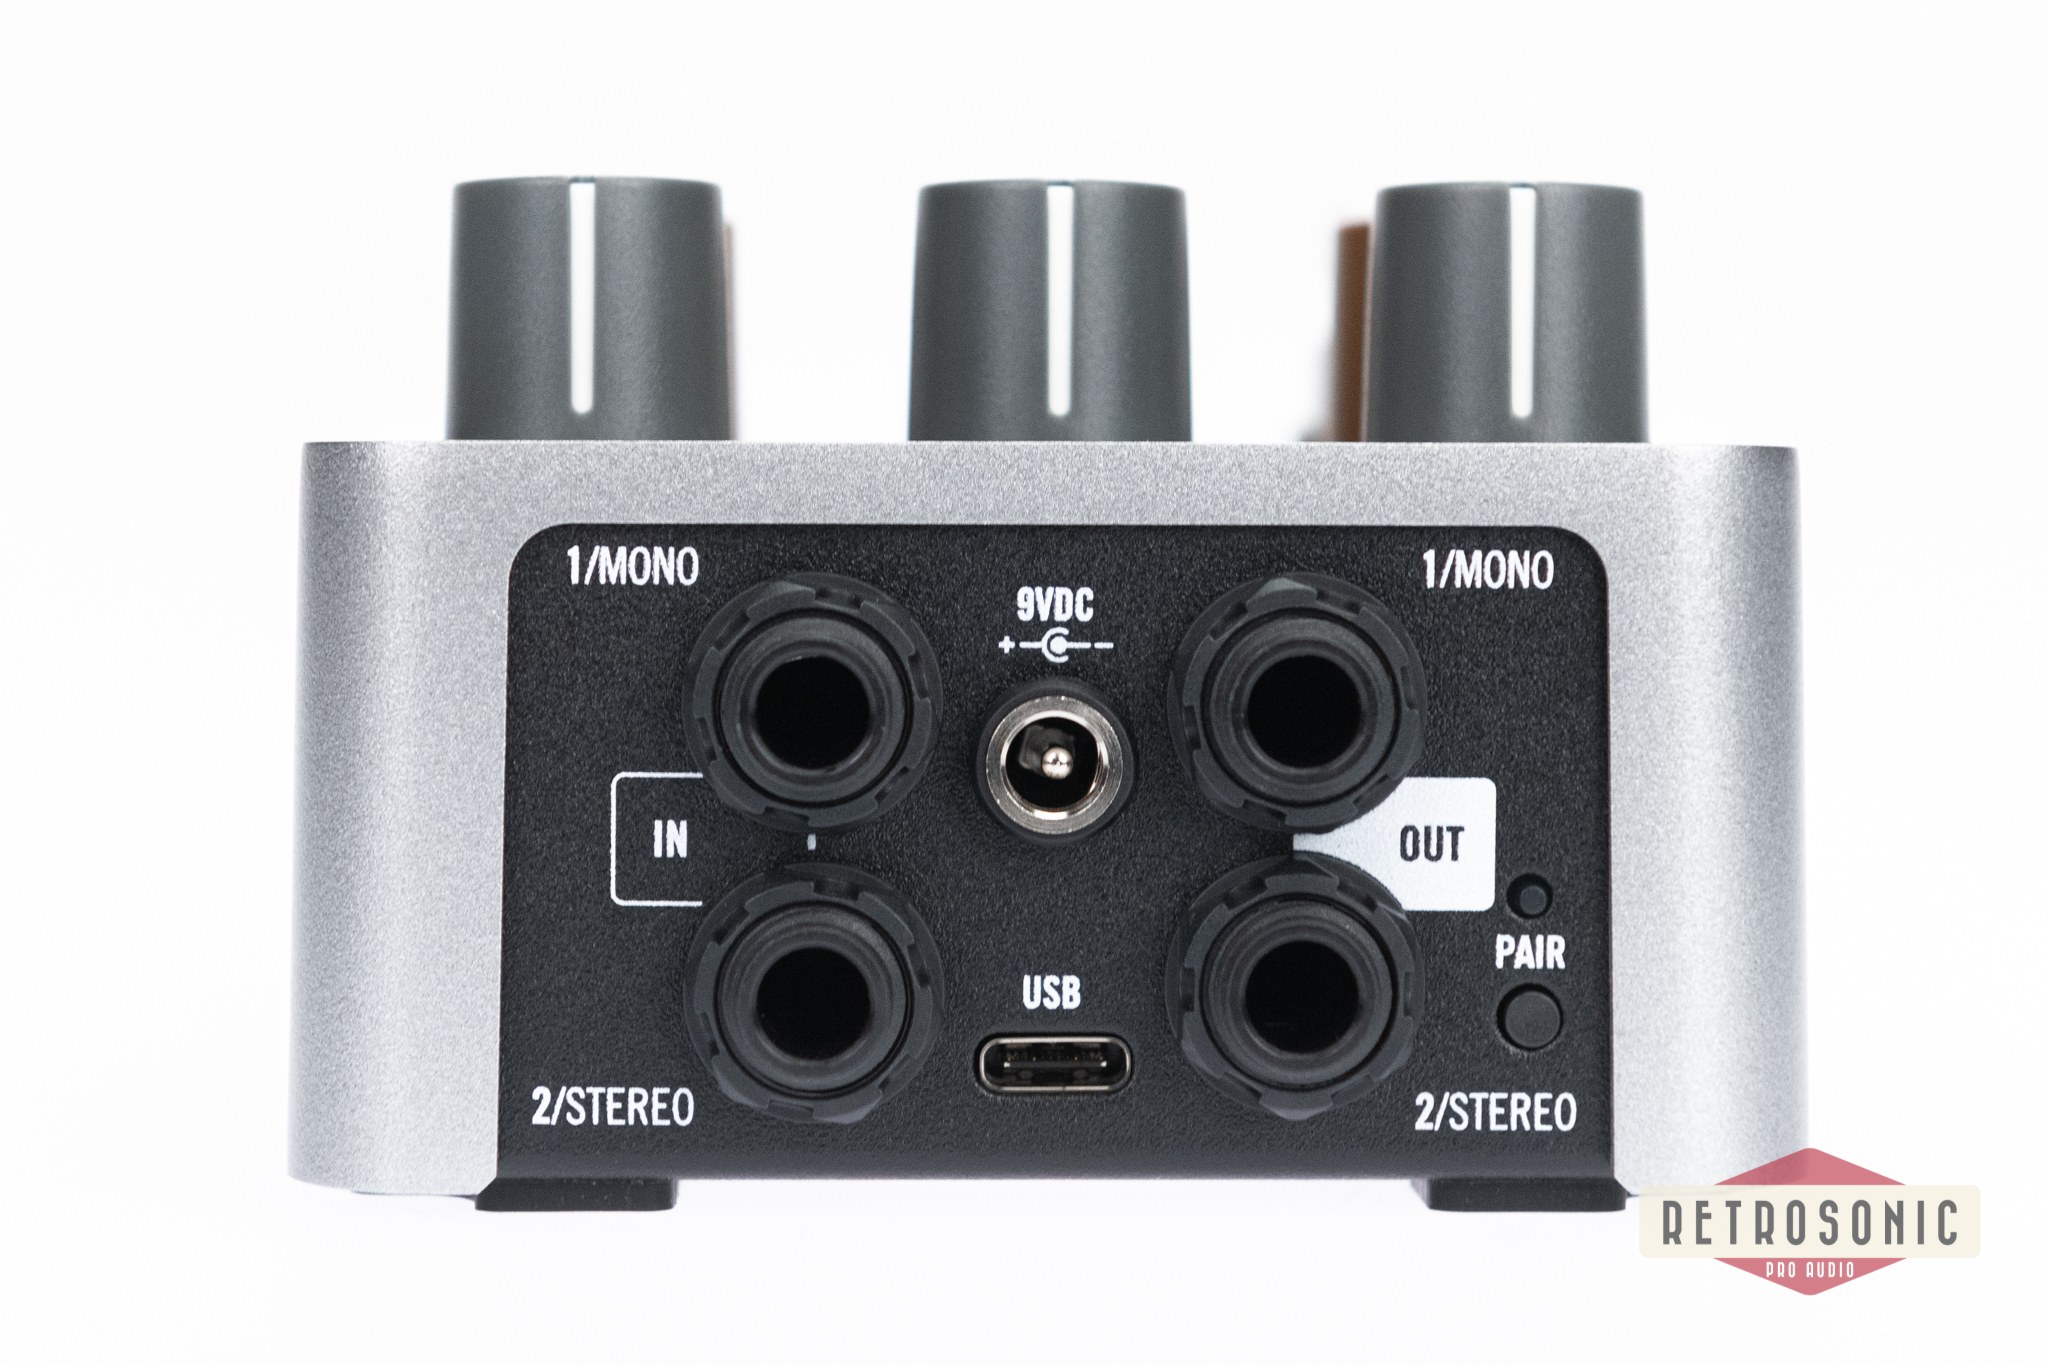 Universal Audio UAFX OX Stomp Dynamic Speaker Emulator Stereo Pedal